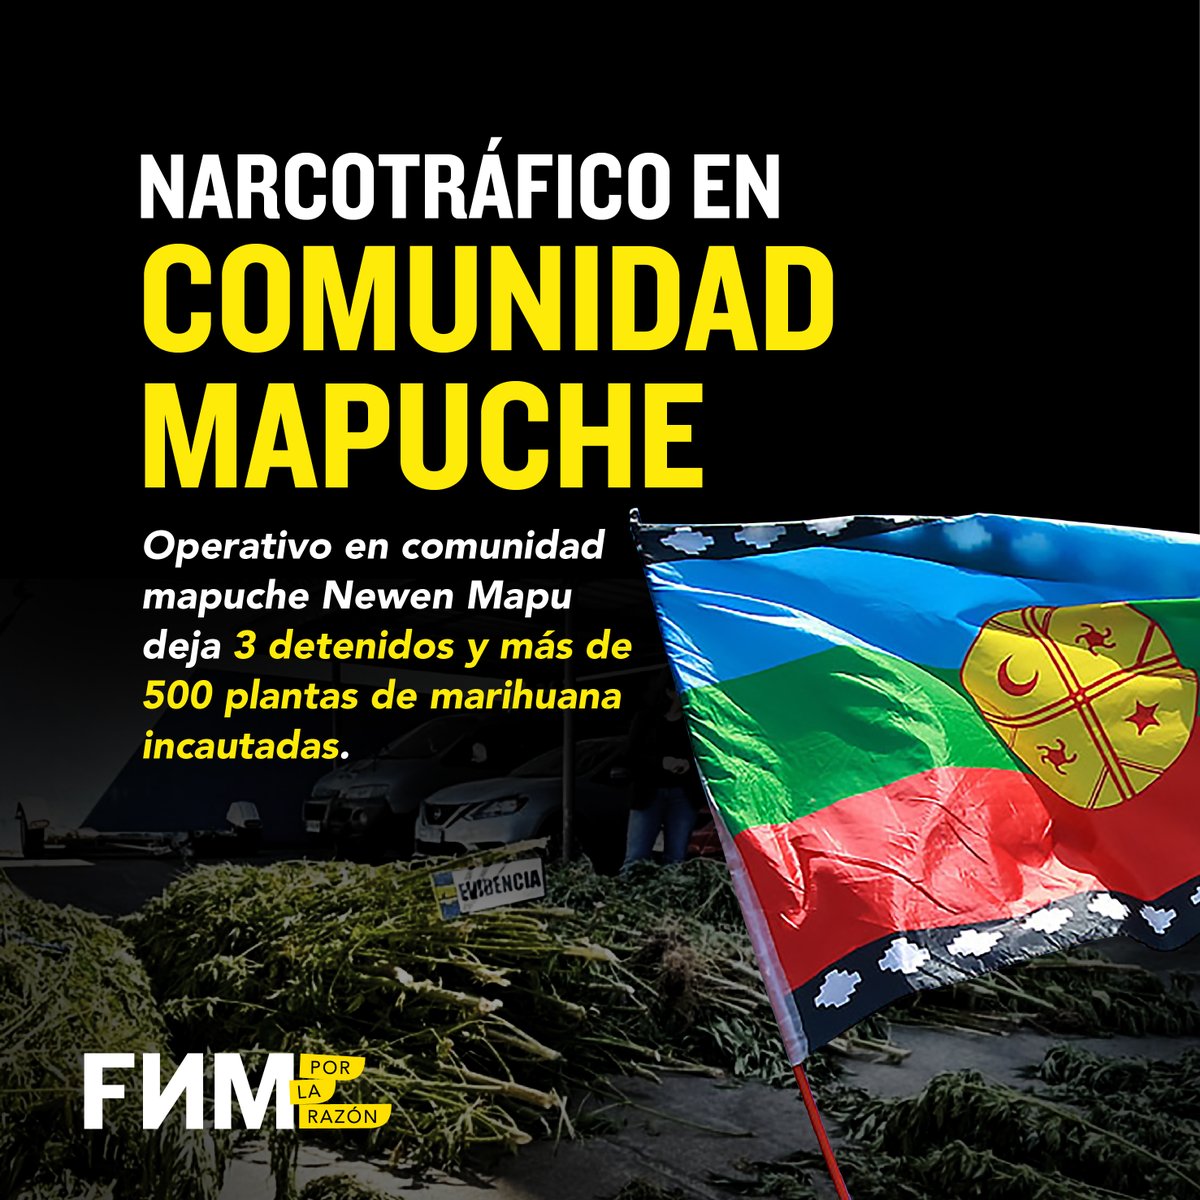 🚨 NARCOTRÁFICO EN COMUNIDAD MAPUCHE

Operativo en comunidad mapuche Newen Mapu deja 3 detenidos y más de 500 plantas de marihuana incautadas.

🧵👇